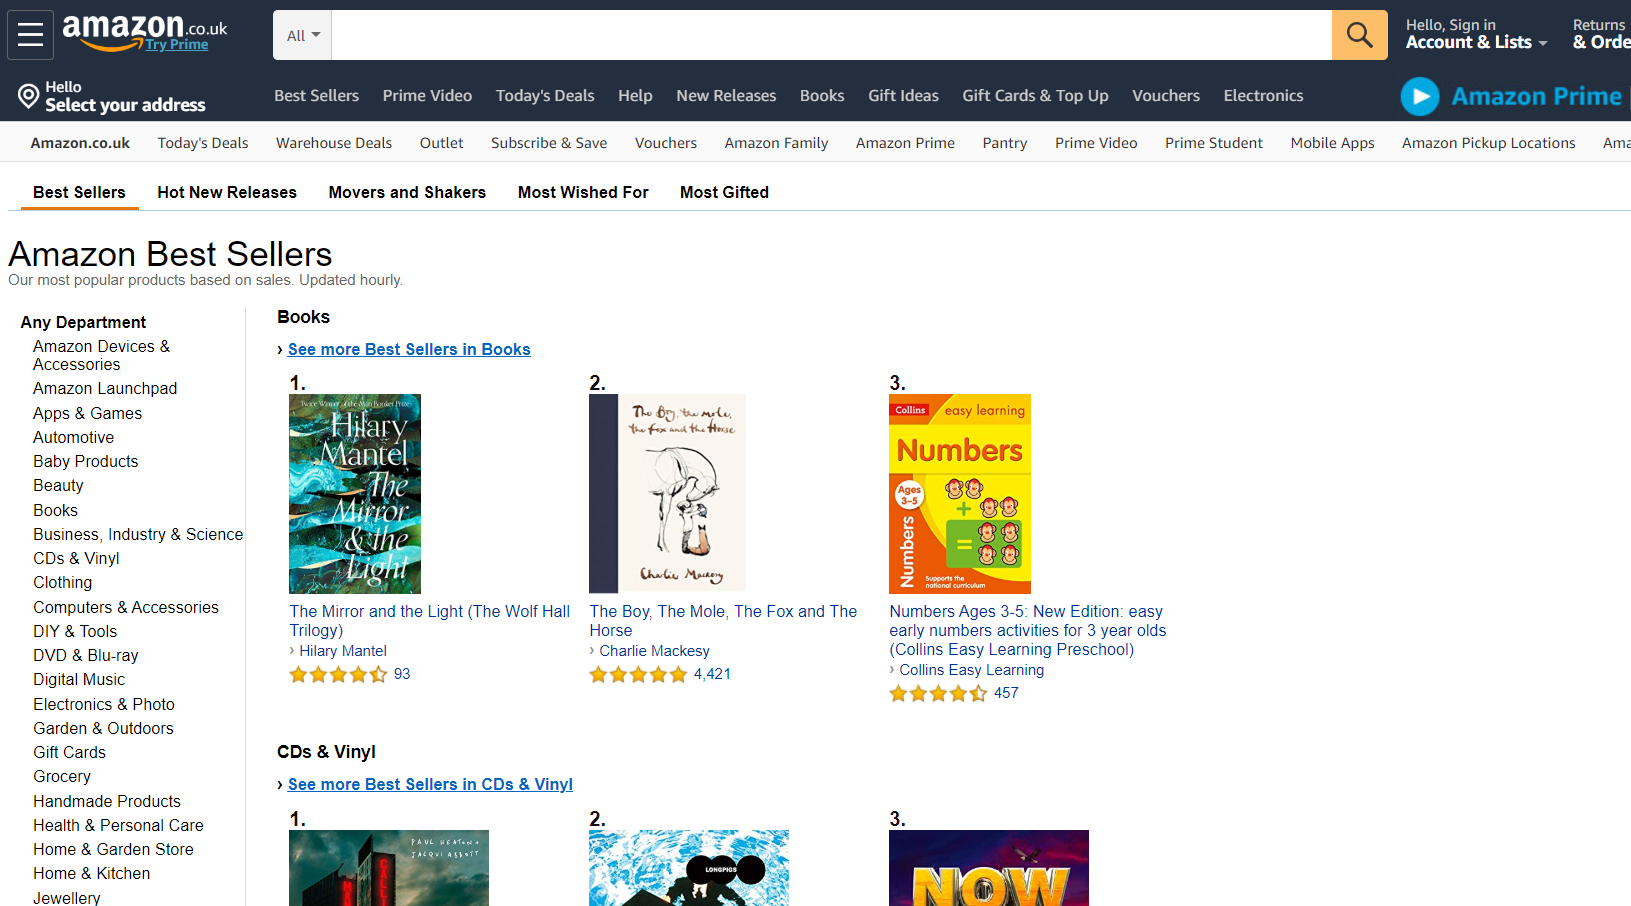 Amazon bestsellers